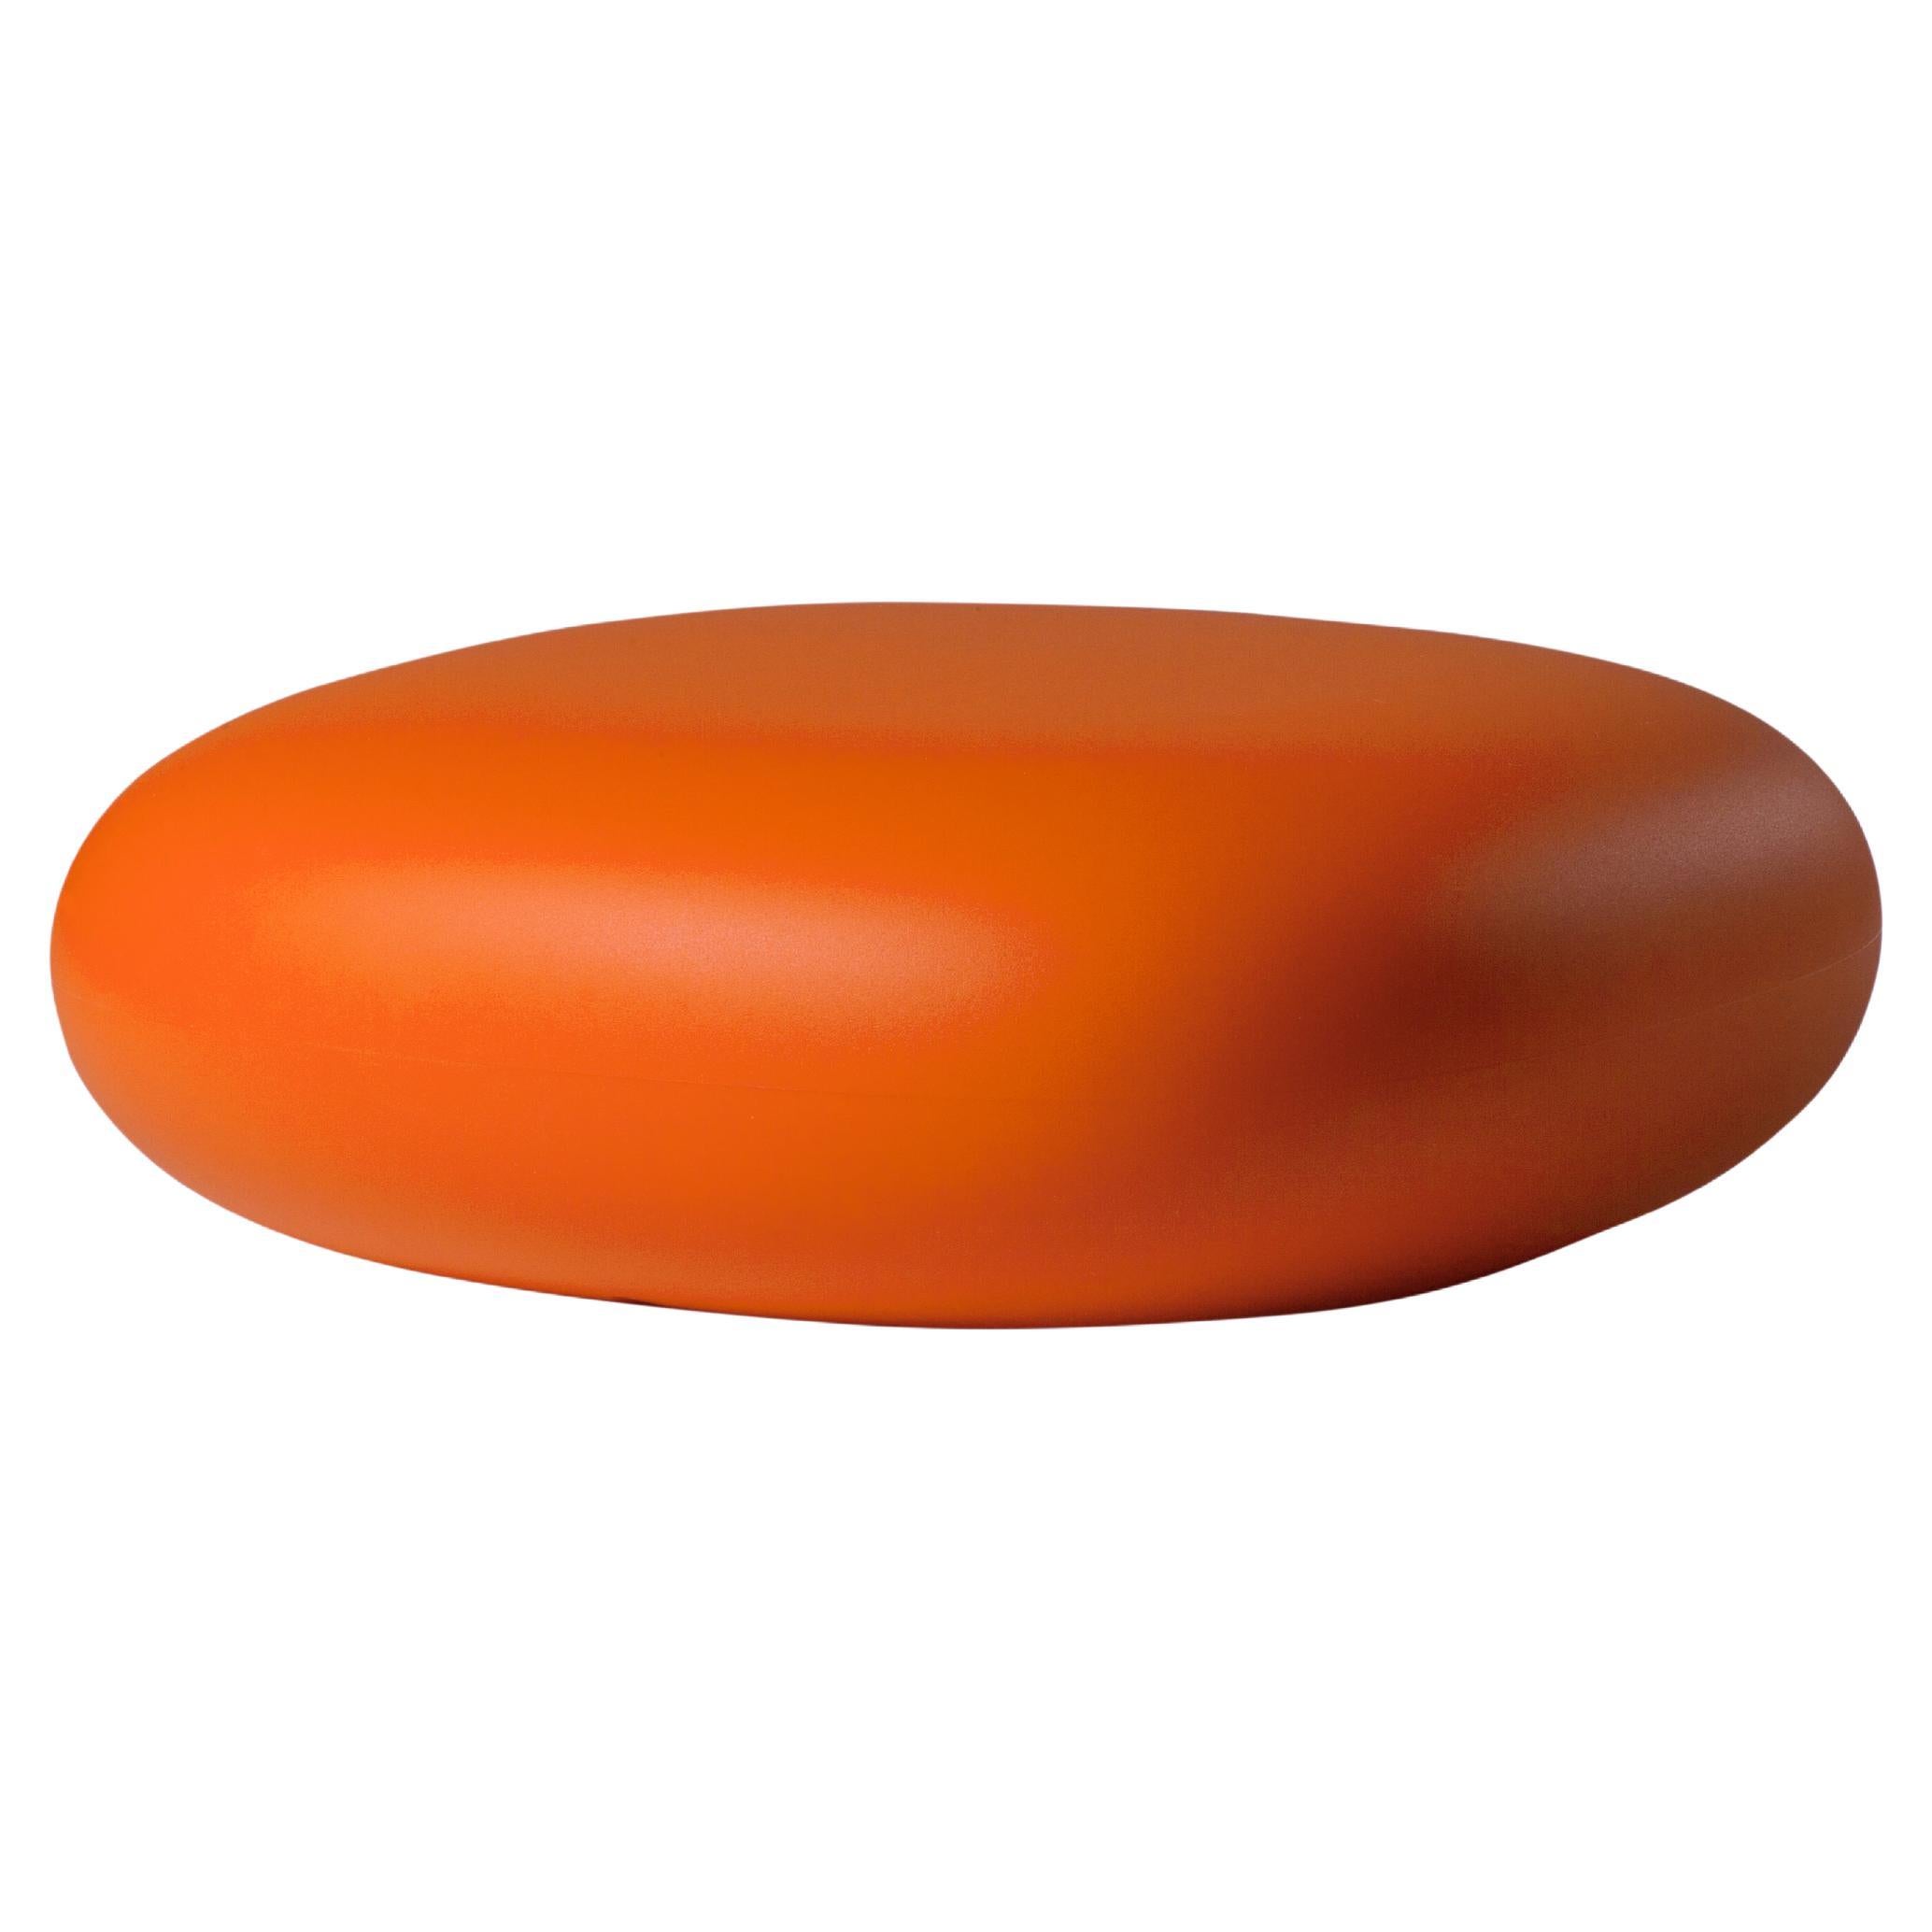 Slide Design Chubby Low Pouf in Pumpkin Orange by Marcel Wanders For Sale